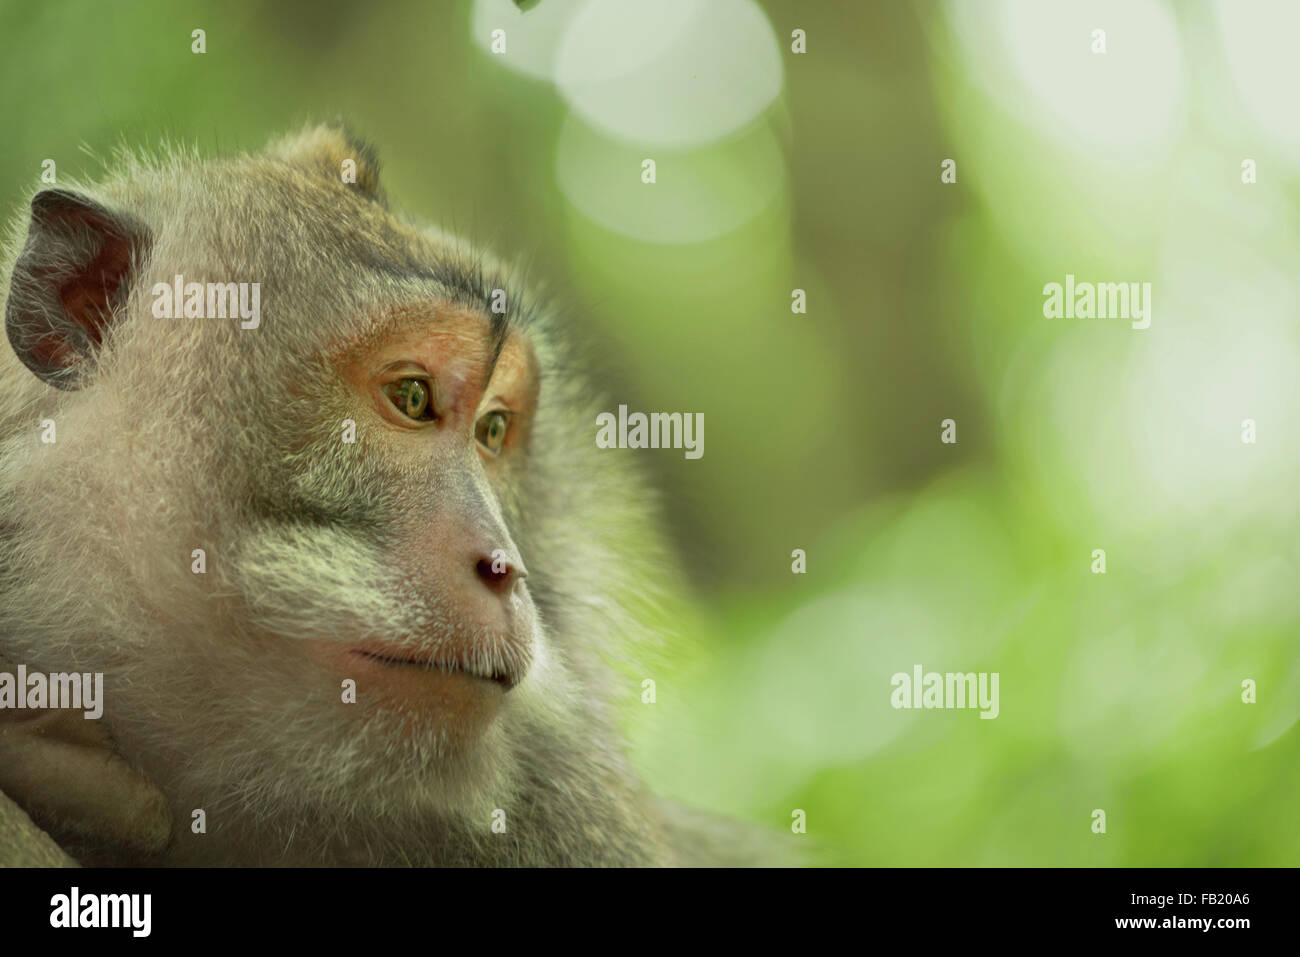 Wilde adult Affe Gesicht Porträt im Dschungel-Lebensraum, natürlichen grünen Hintergrund. Ideal für Wildtiere-Kampagne. Stockfoto